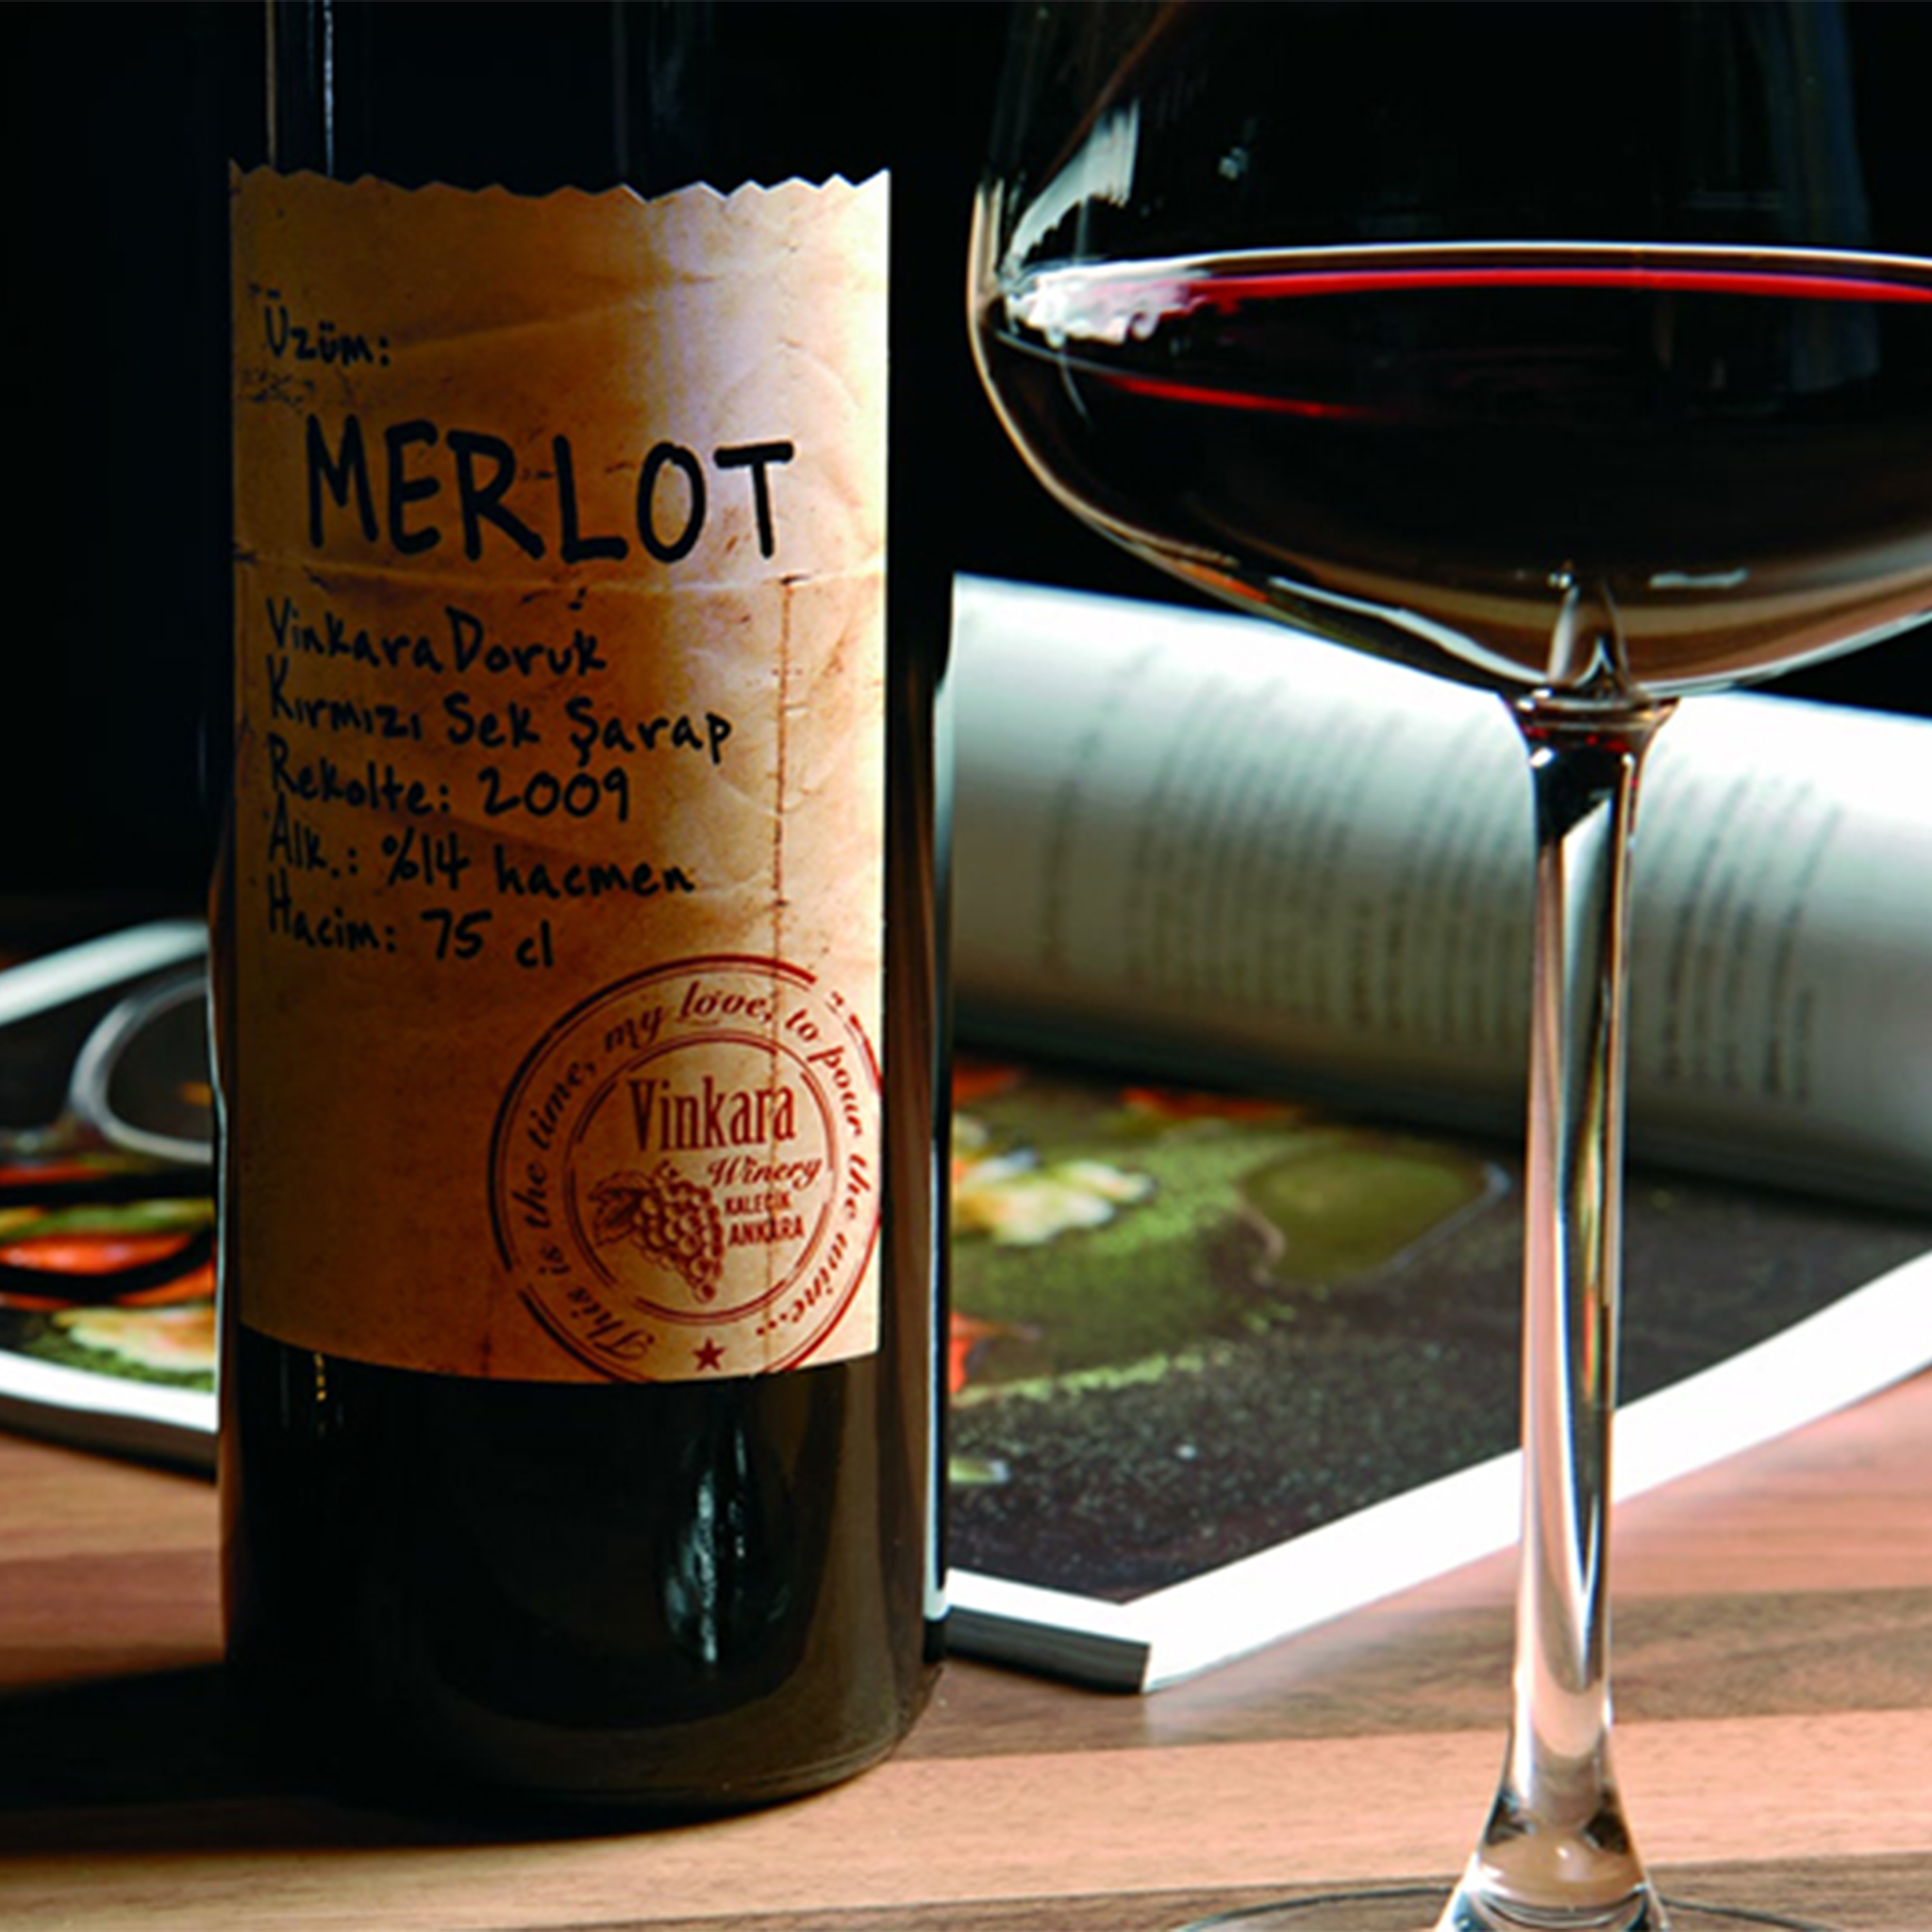 Vinkara Doruk Merlot 750ml Dry Turkish Red Wine | Vinkara Doruk Merlot Kirmizi Sek Sarap | Dry Red Wine